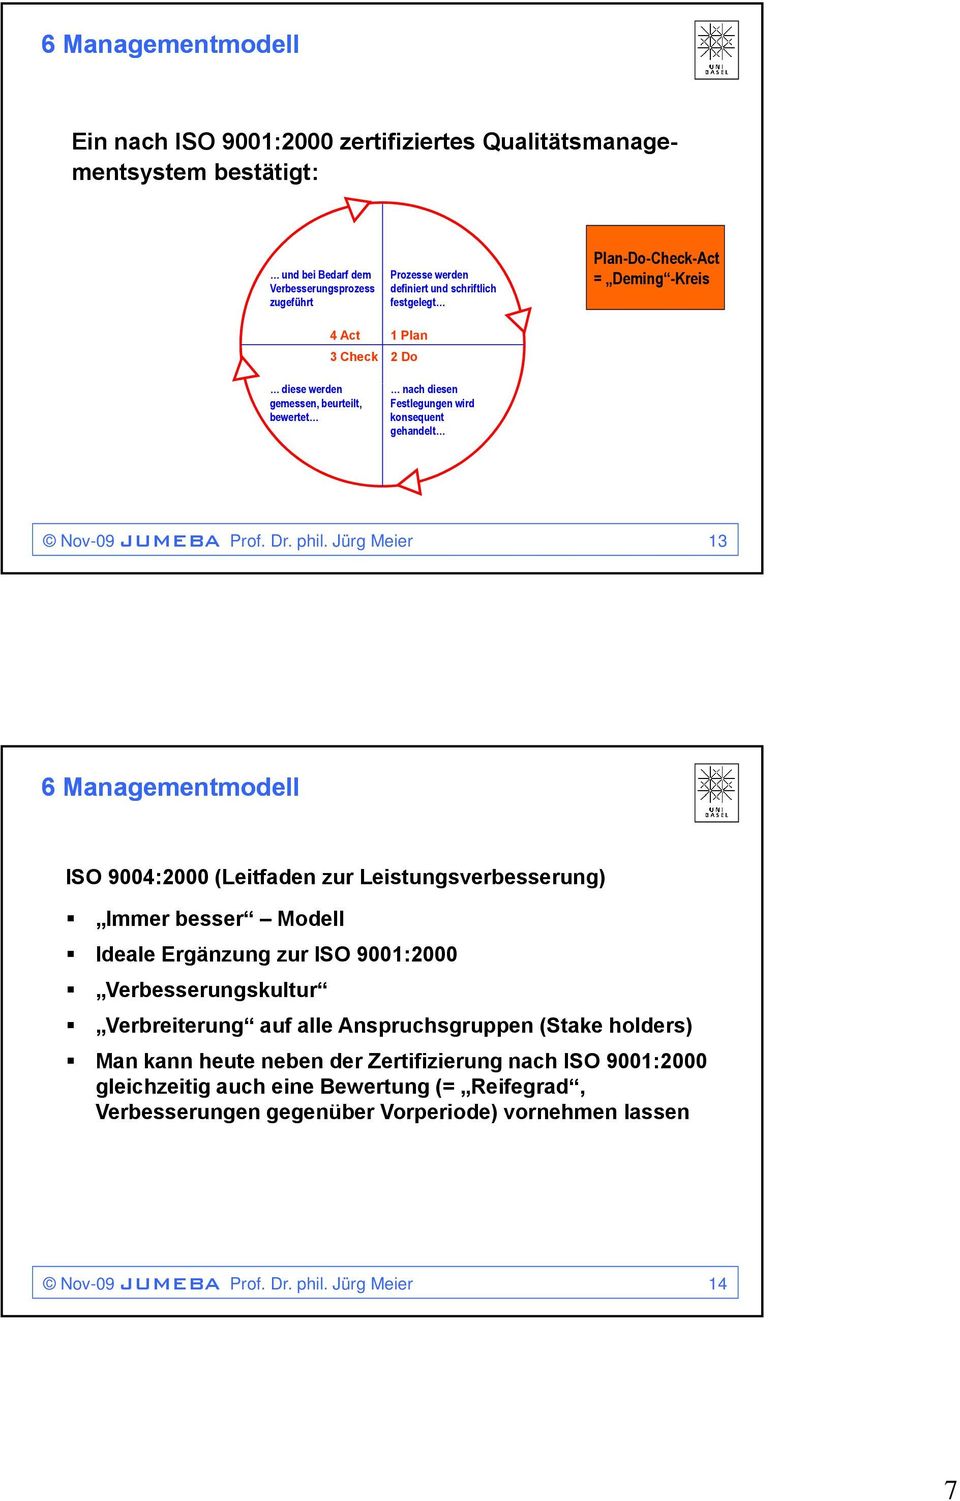 Jürg Meier 13 ISO 9004:2000 (Leitfaden zur Leistungsverbesserung) Immer besser Modell Ideale Ergänzung zur ISO 9001:2000 Verbesserungskultur Verbreiterung auf alle Anspruchsgruppen (Stake